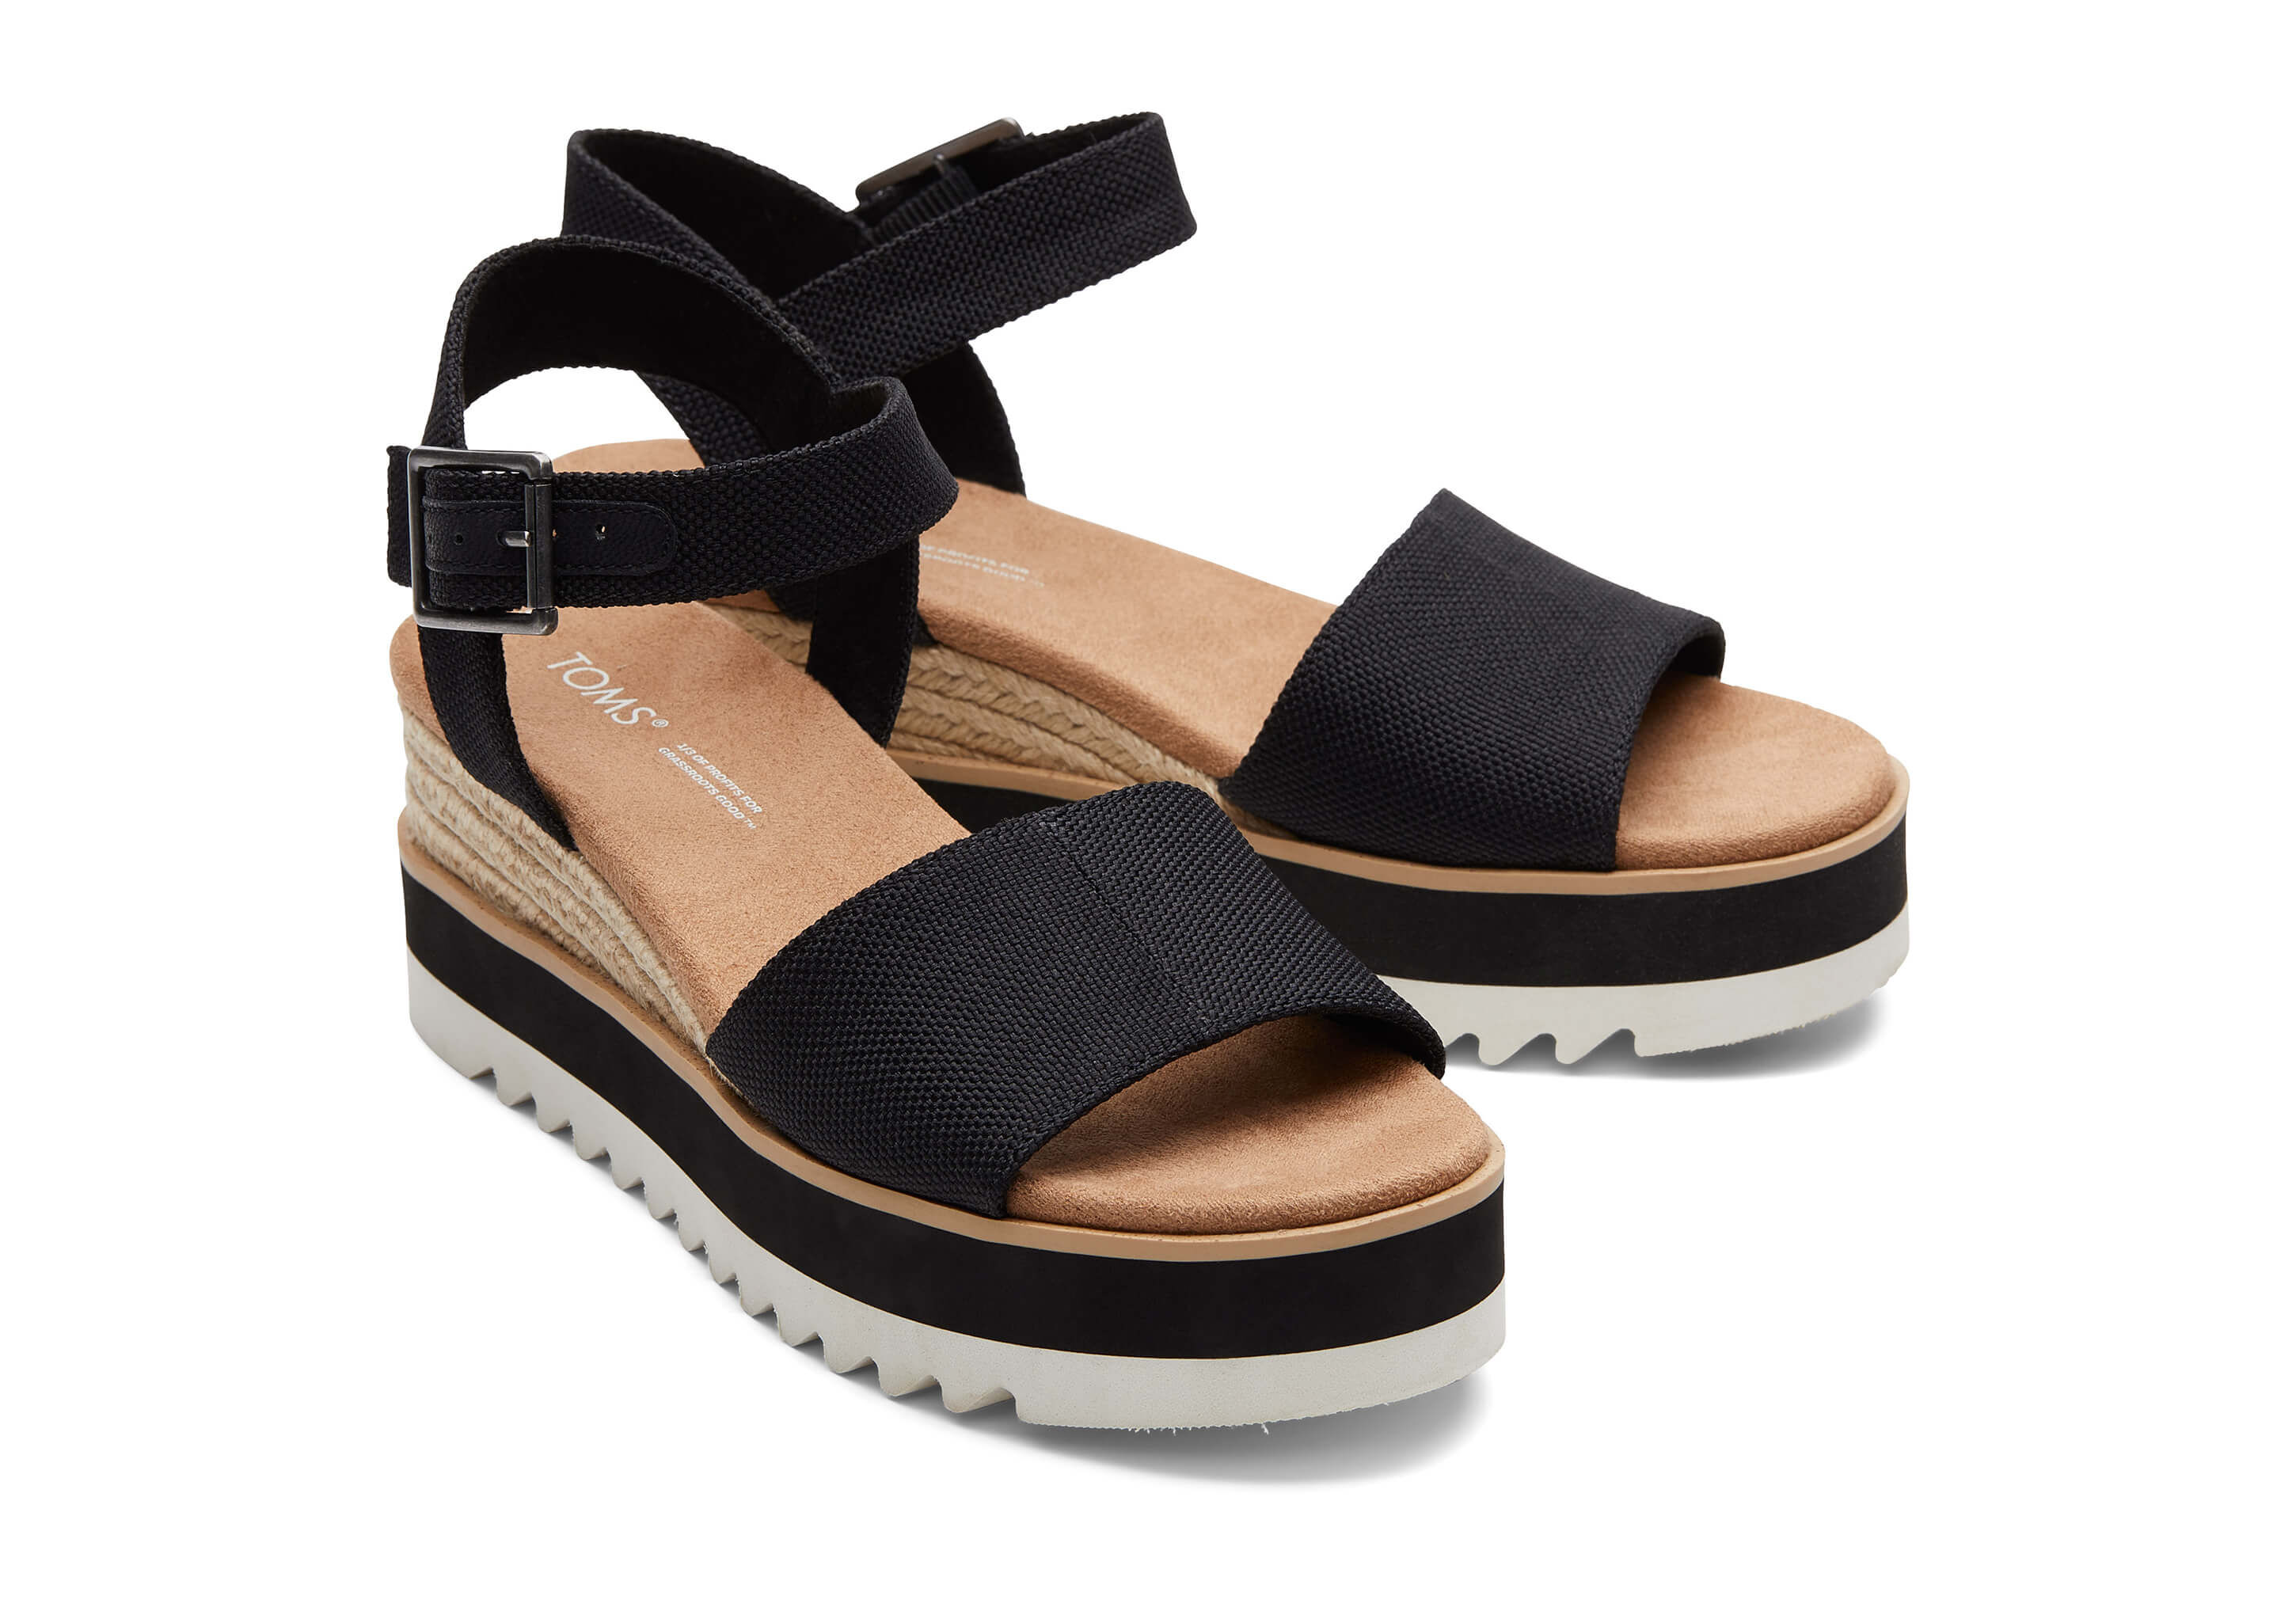 Toms | Shoes | Toms Black Suede Platform Wedge Sandals | Poshmark